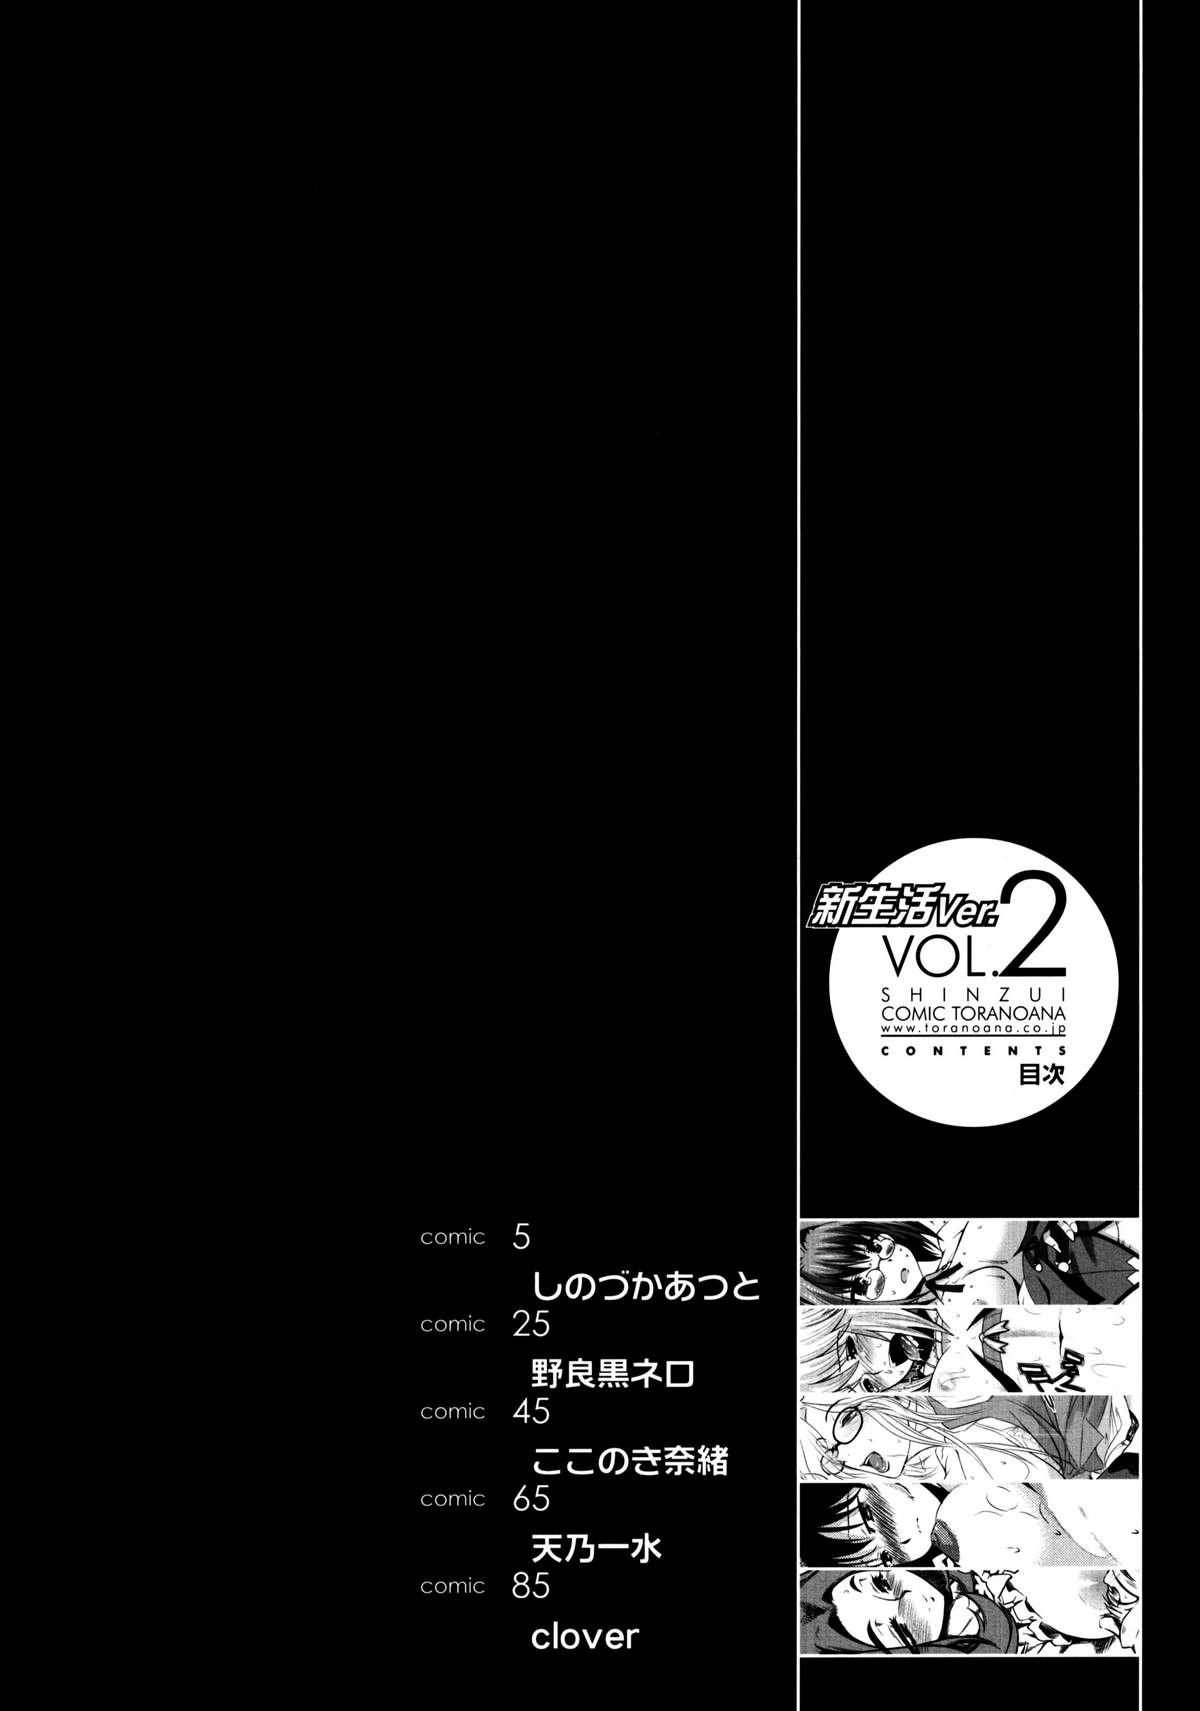 Shinzui Shinseikatsu Ver. Vol. 2 | Shinzui New Life Ver. Vol.2 2